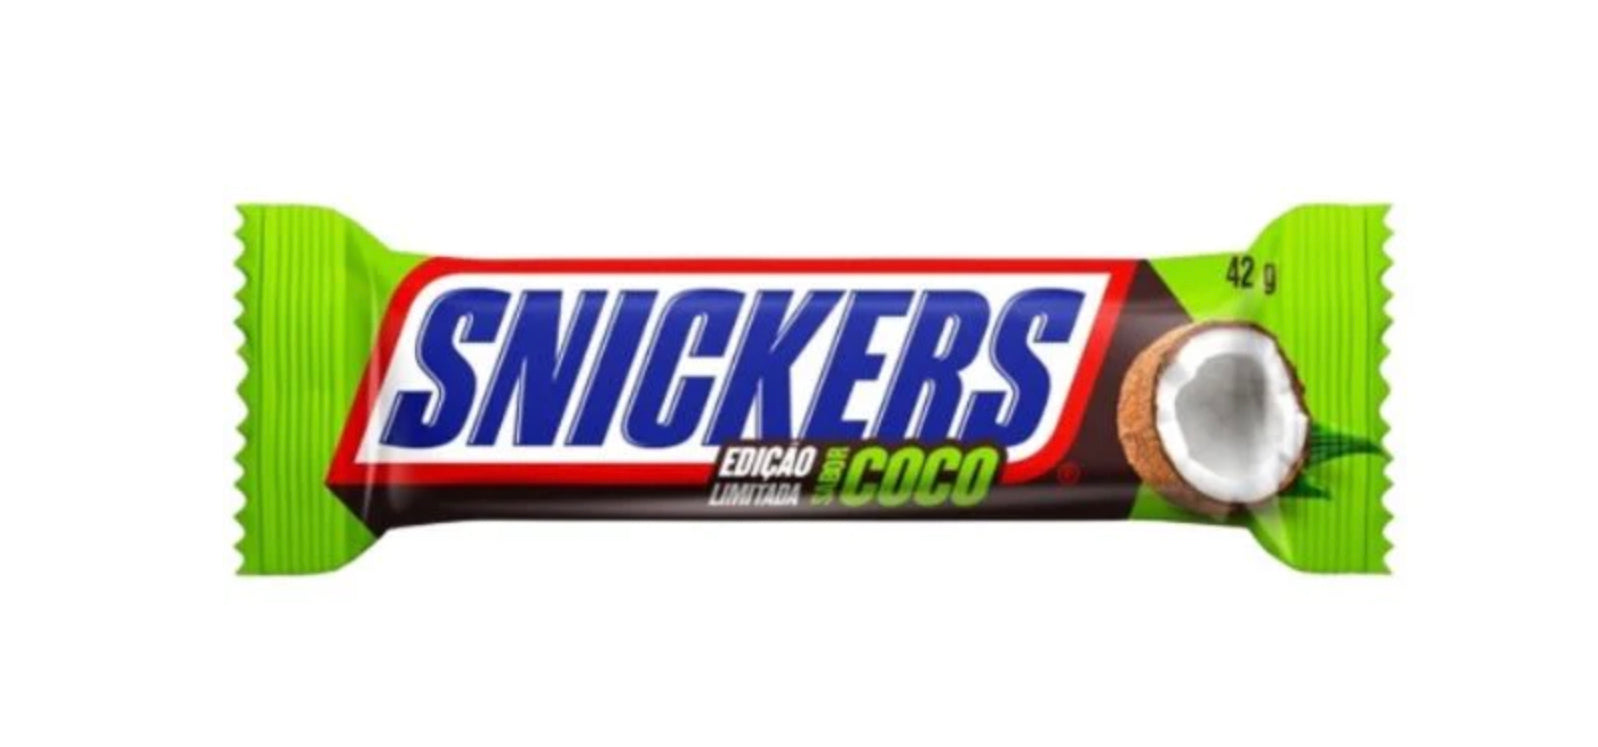 Snickers - Cocco 42g Edizione Limitata